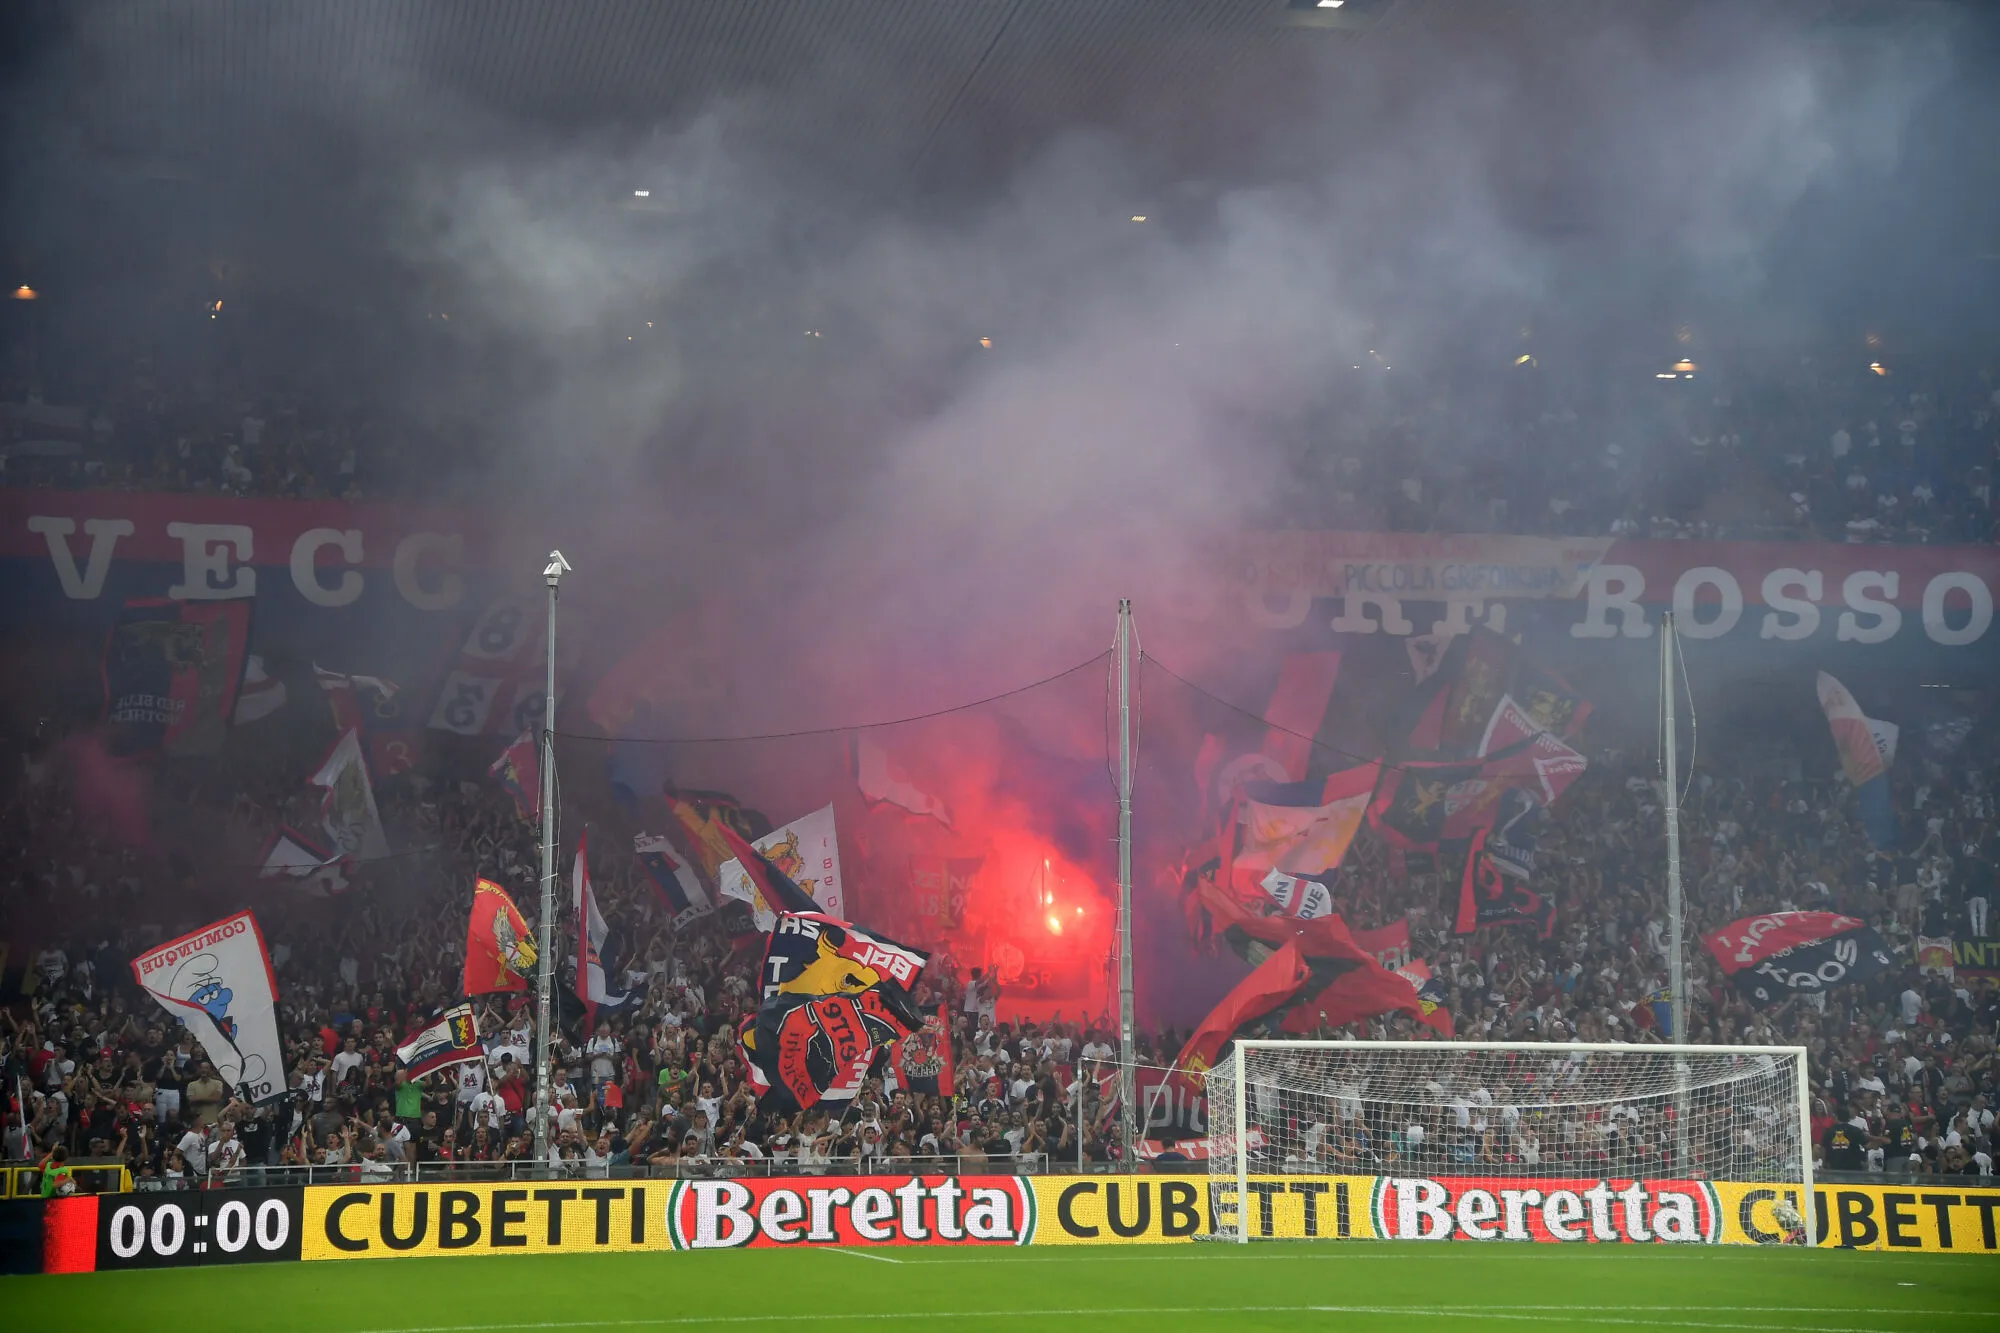 Pour son retour en Serie A, le Genoa fait sauter le record d&rsquo;abonnements de la ville